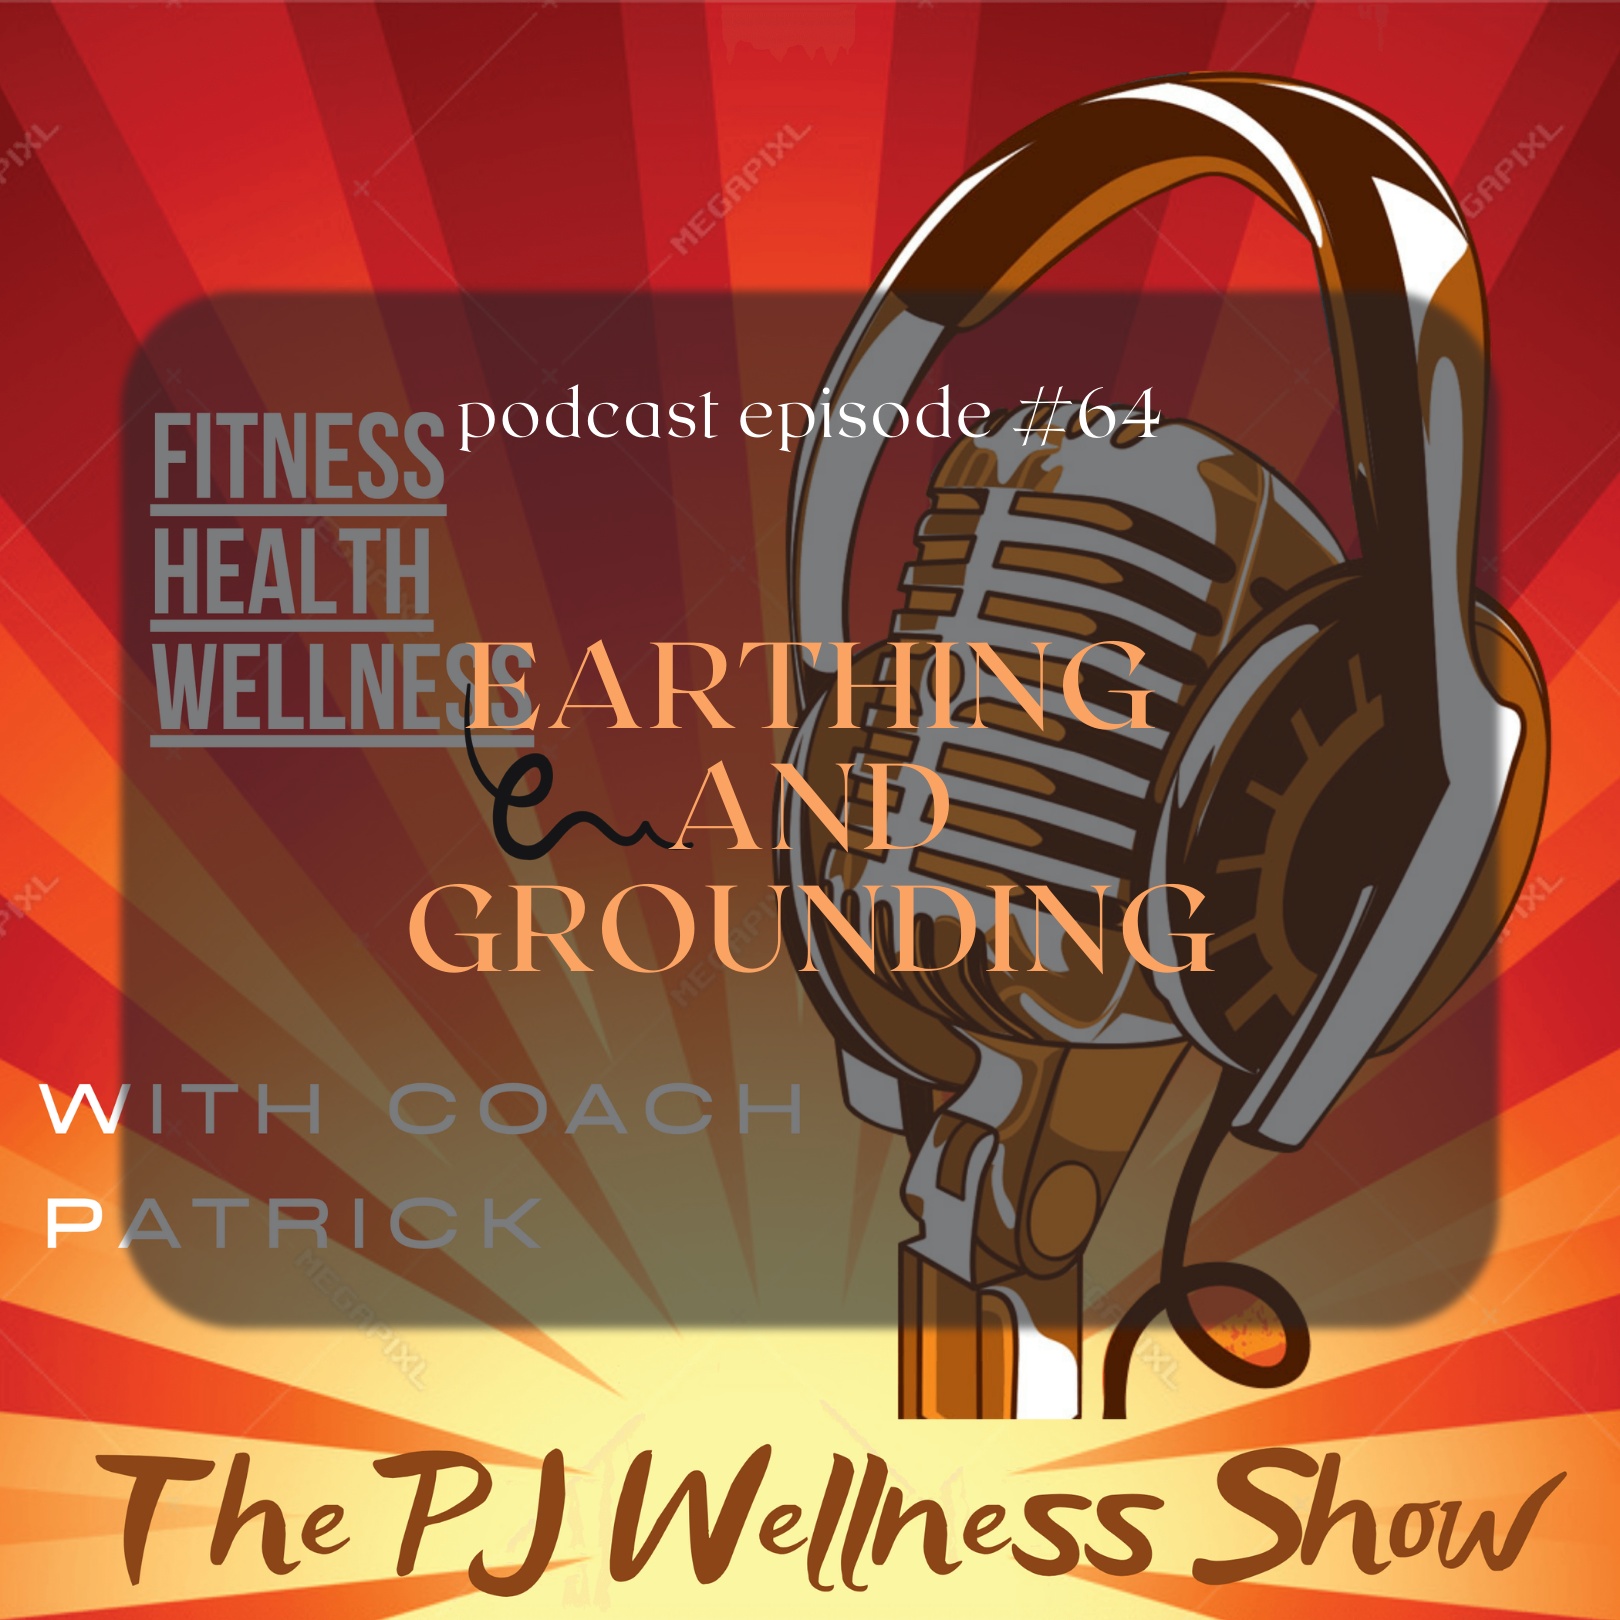 Artwork for podcast The PJ Wellness Show